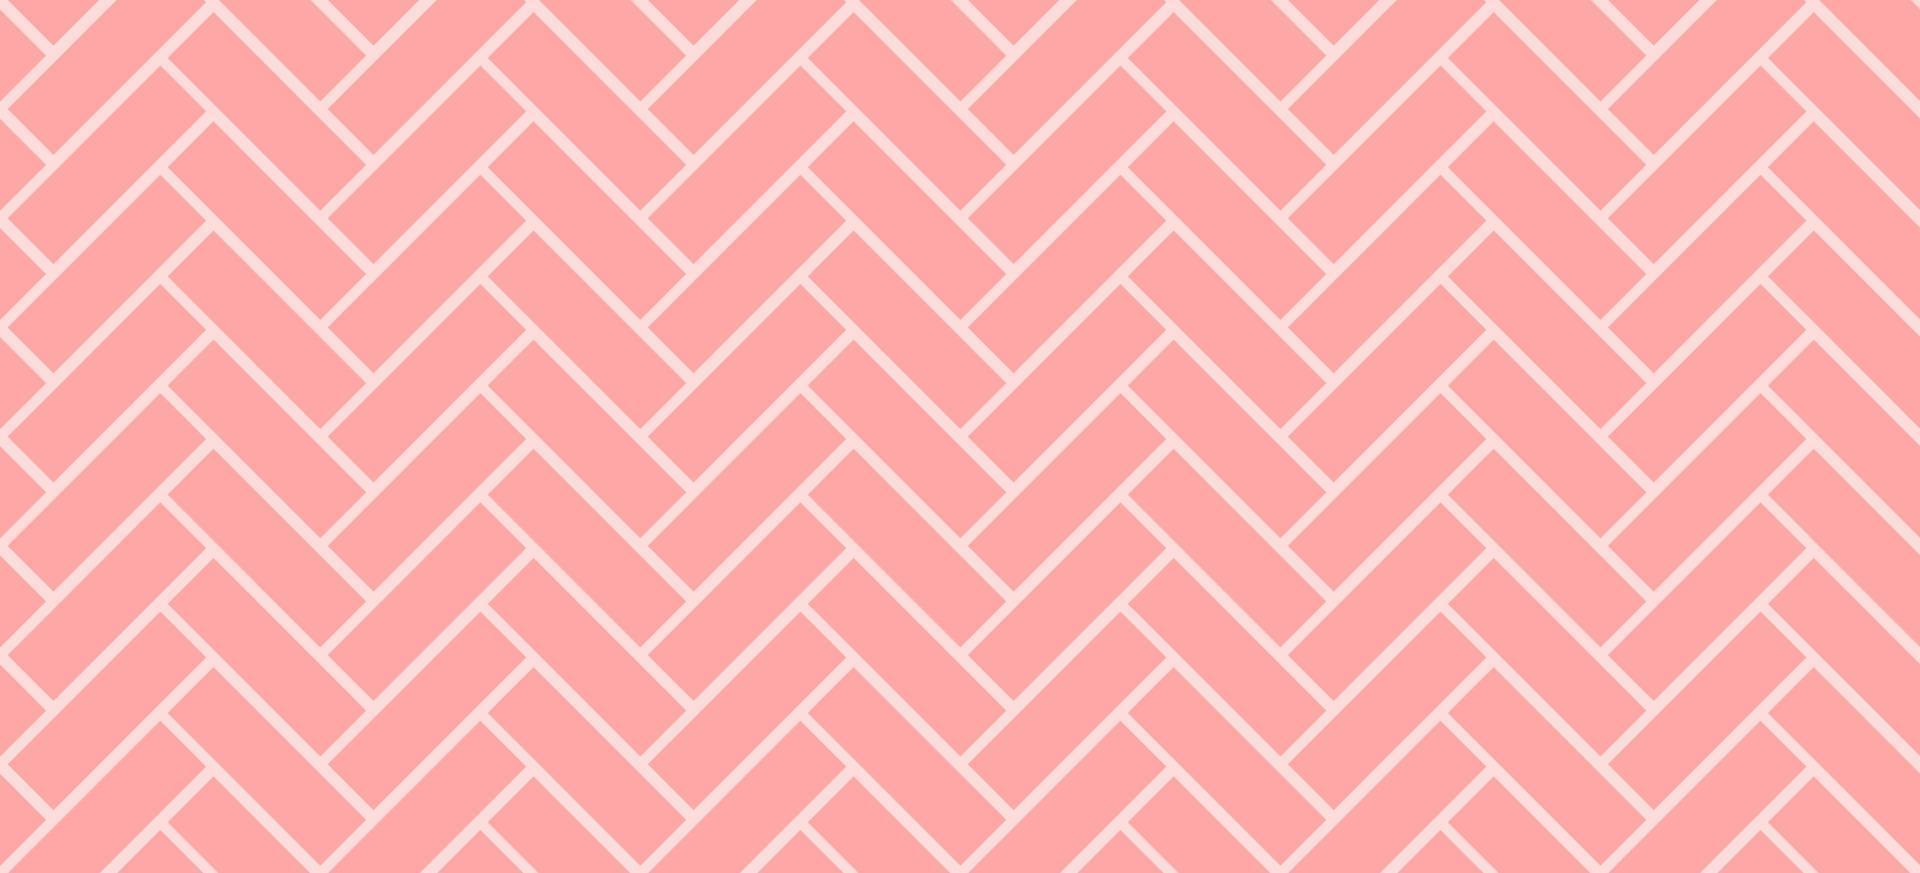 patrón de mosaico de espiga. fondo de ladrillos de cerámica rosa diagonal. ilustración vectorial perfecta vector